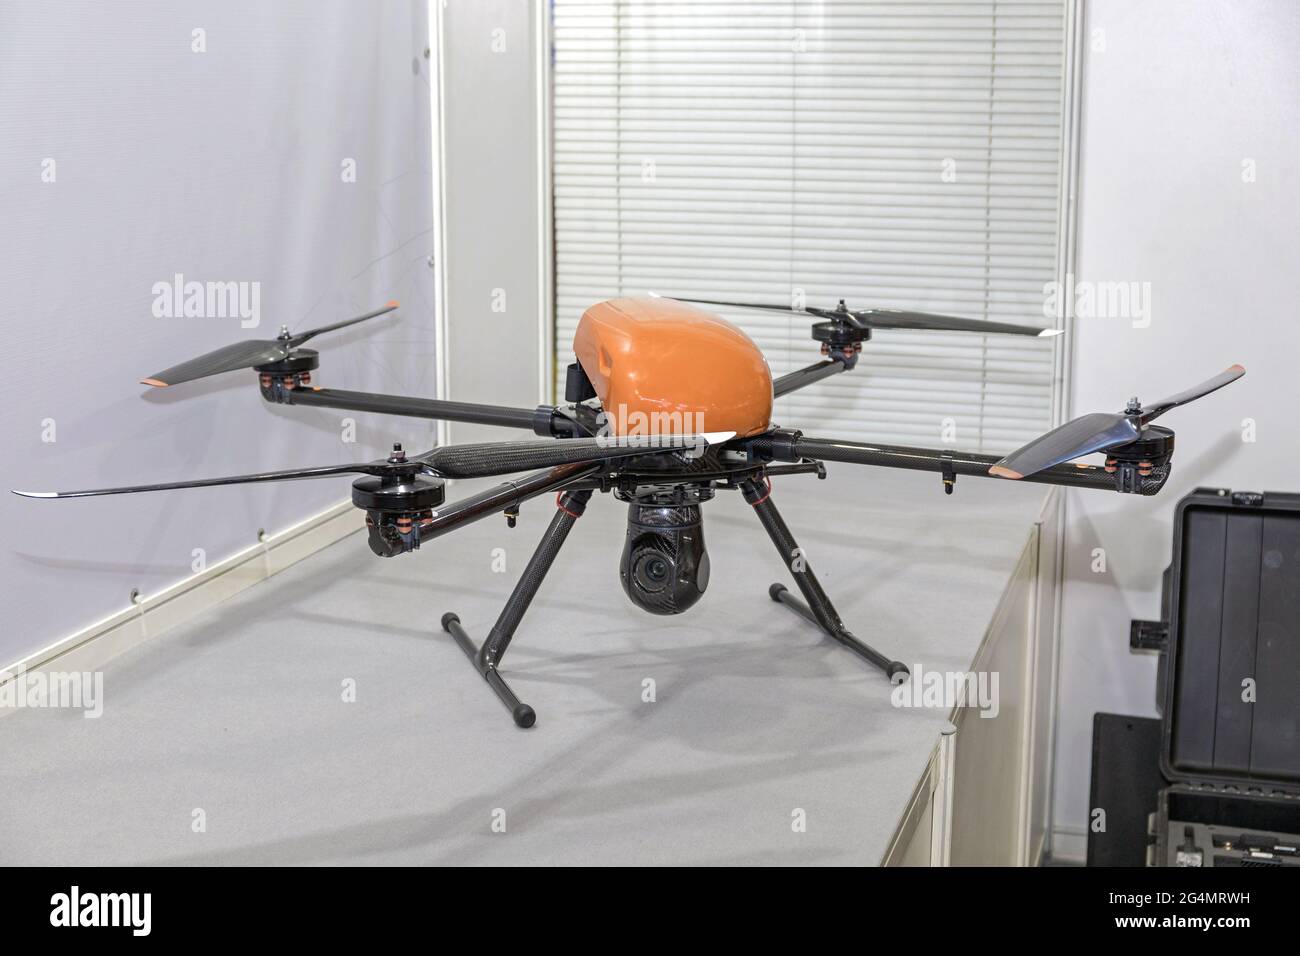 DIY Camera Drone Quadcopter With Carbon Fibre Frame Stock Photo - Alamy